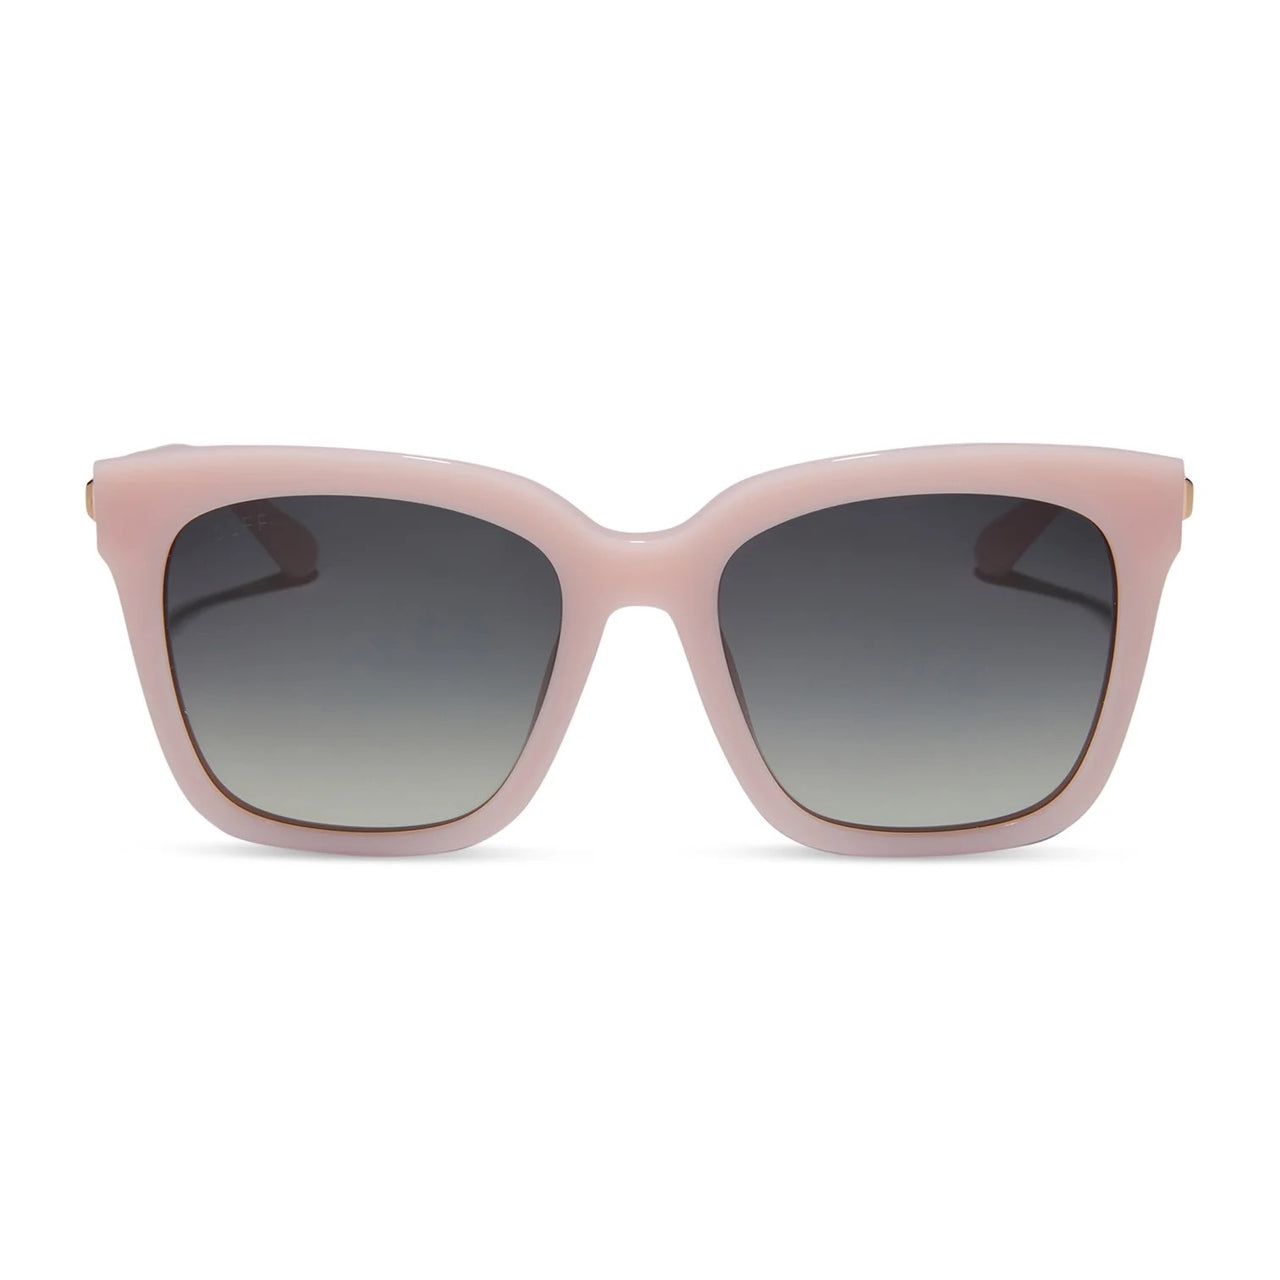 Bella - pink velvet + grey gradient sunglasses